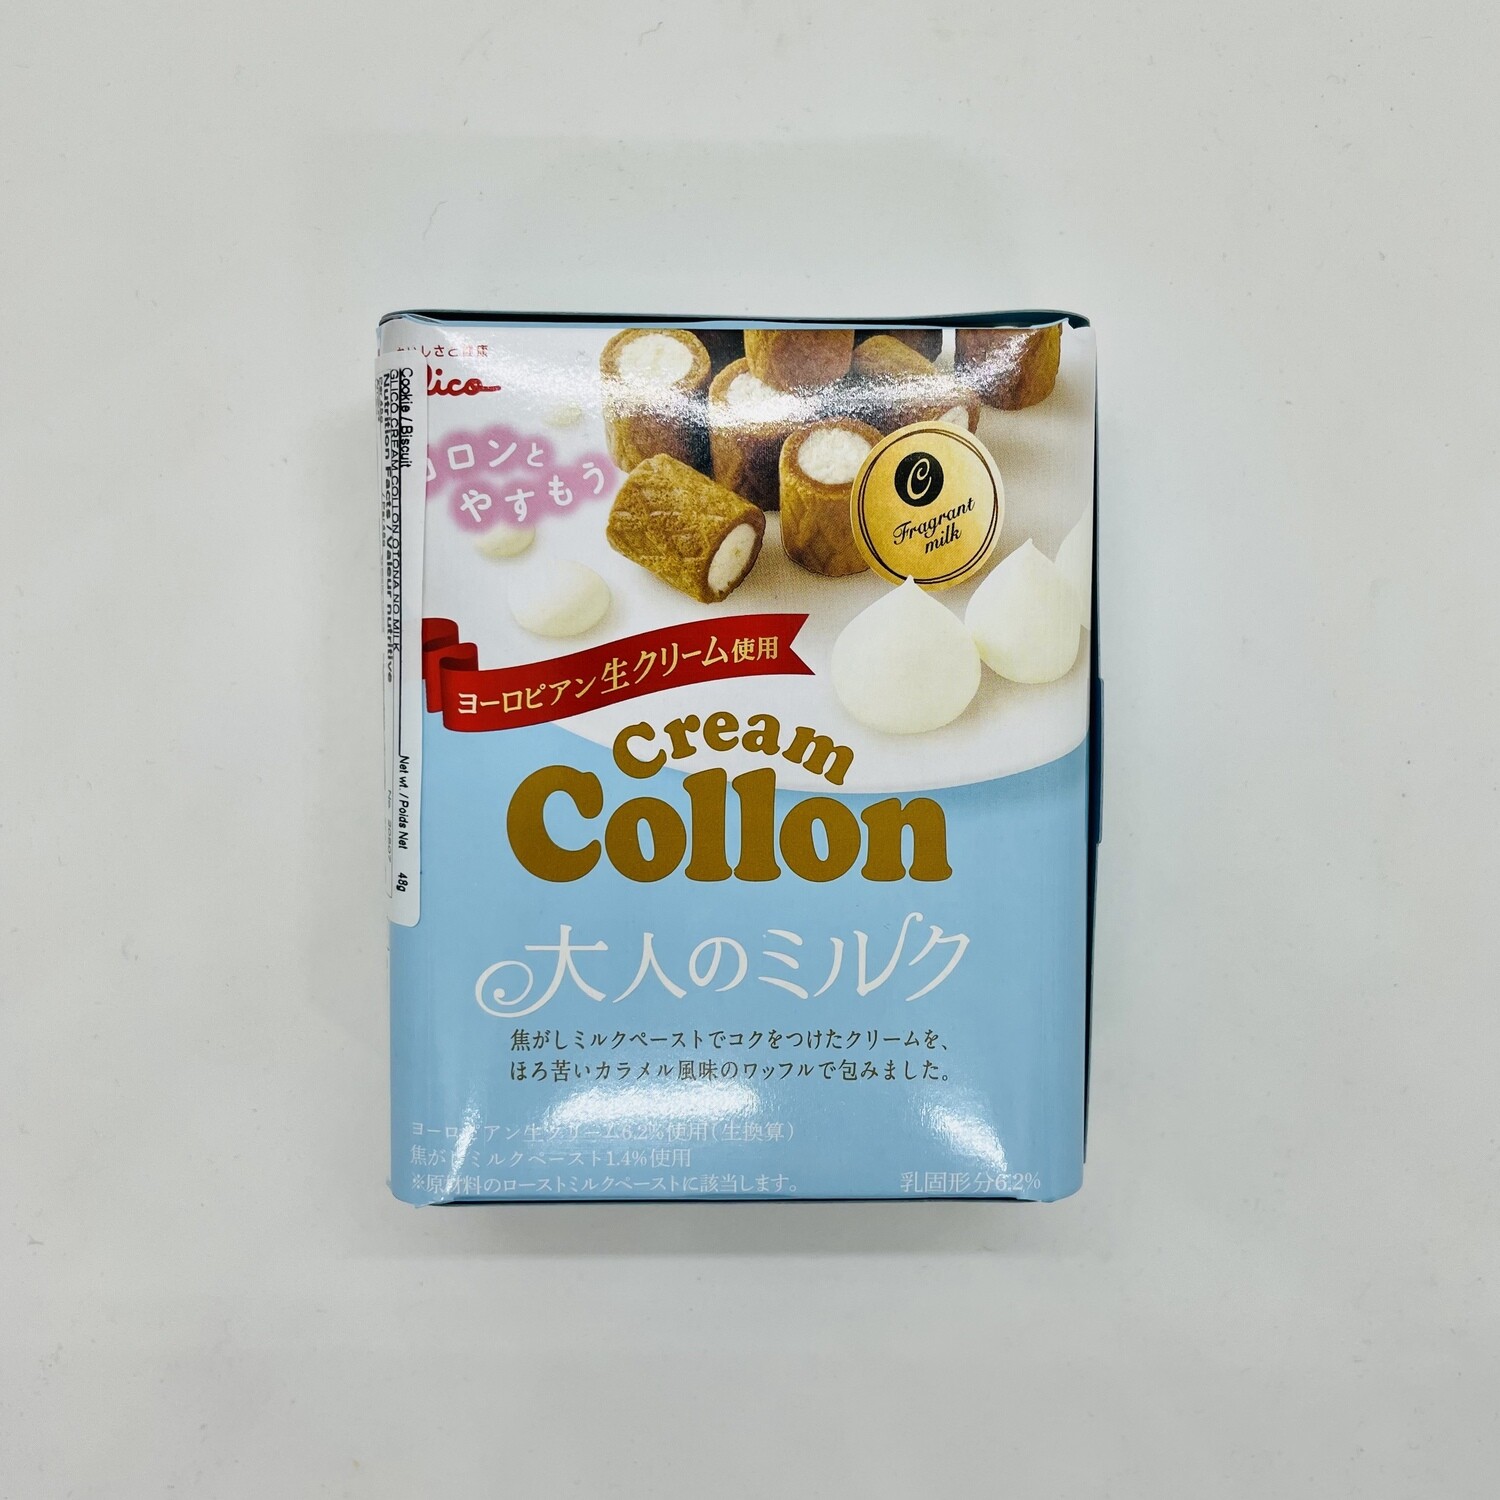 Collon Cream